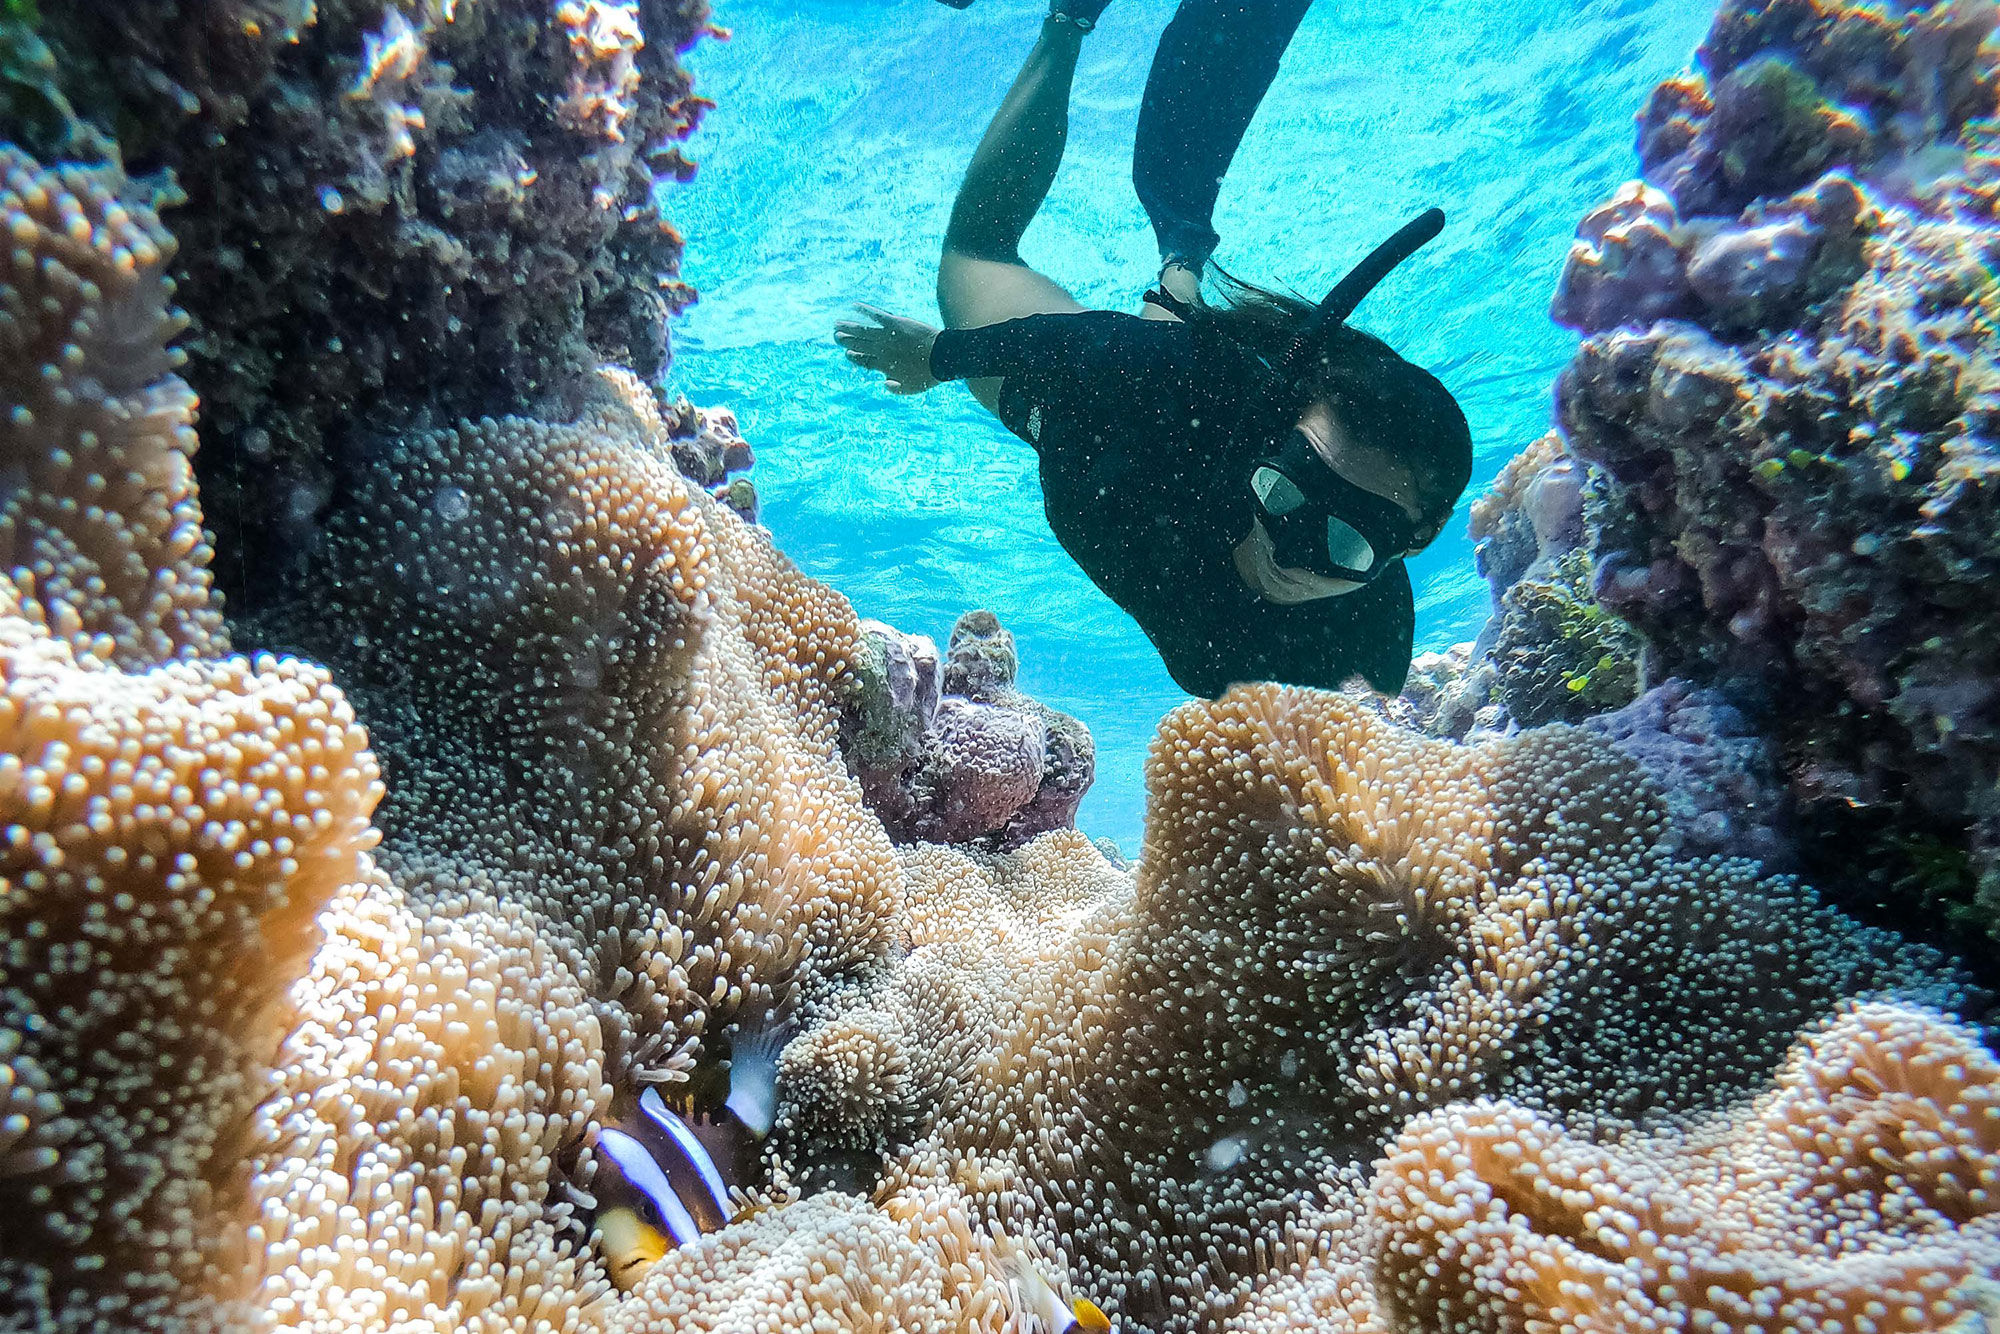 Snorkeling with Nemo